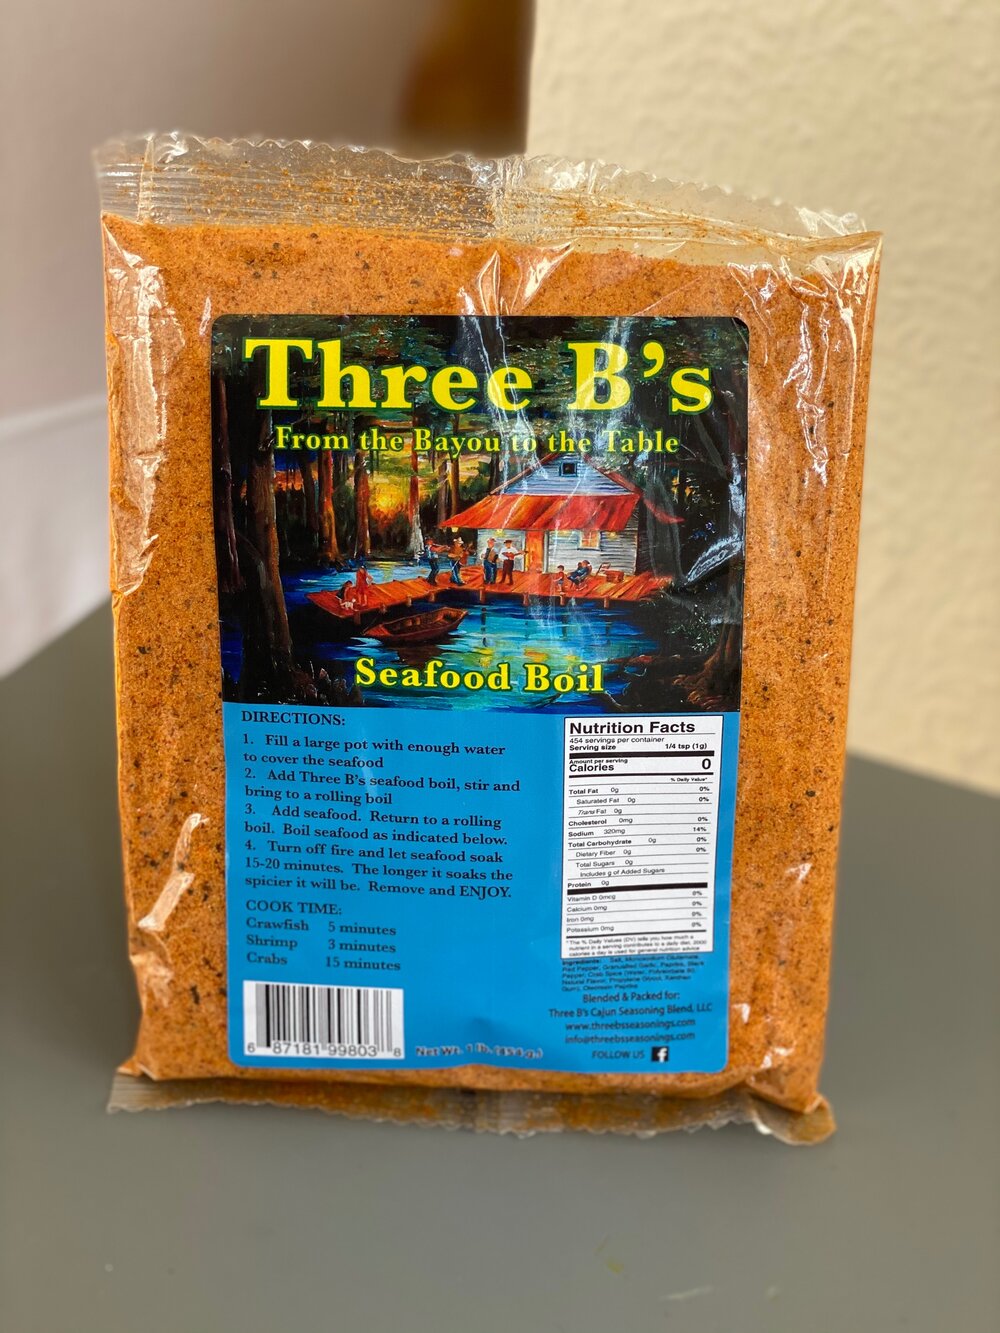  Southern Boyz Seasonings Cajun Seafood Boil, 4 Pound Bulk Sack  (No MSG Blend - Seasons 35-40 Pounds Crawfish, 45 Pounds Shrimp or 6-8  Dozen Crabs) : Grocery & Gourmet Food